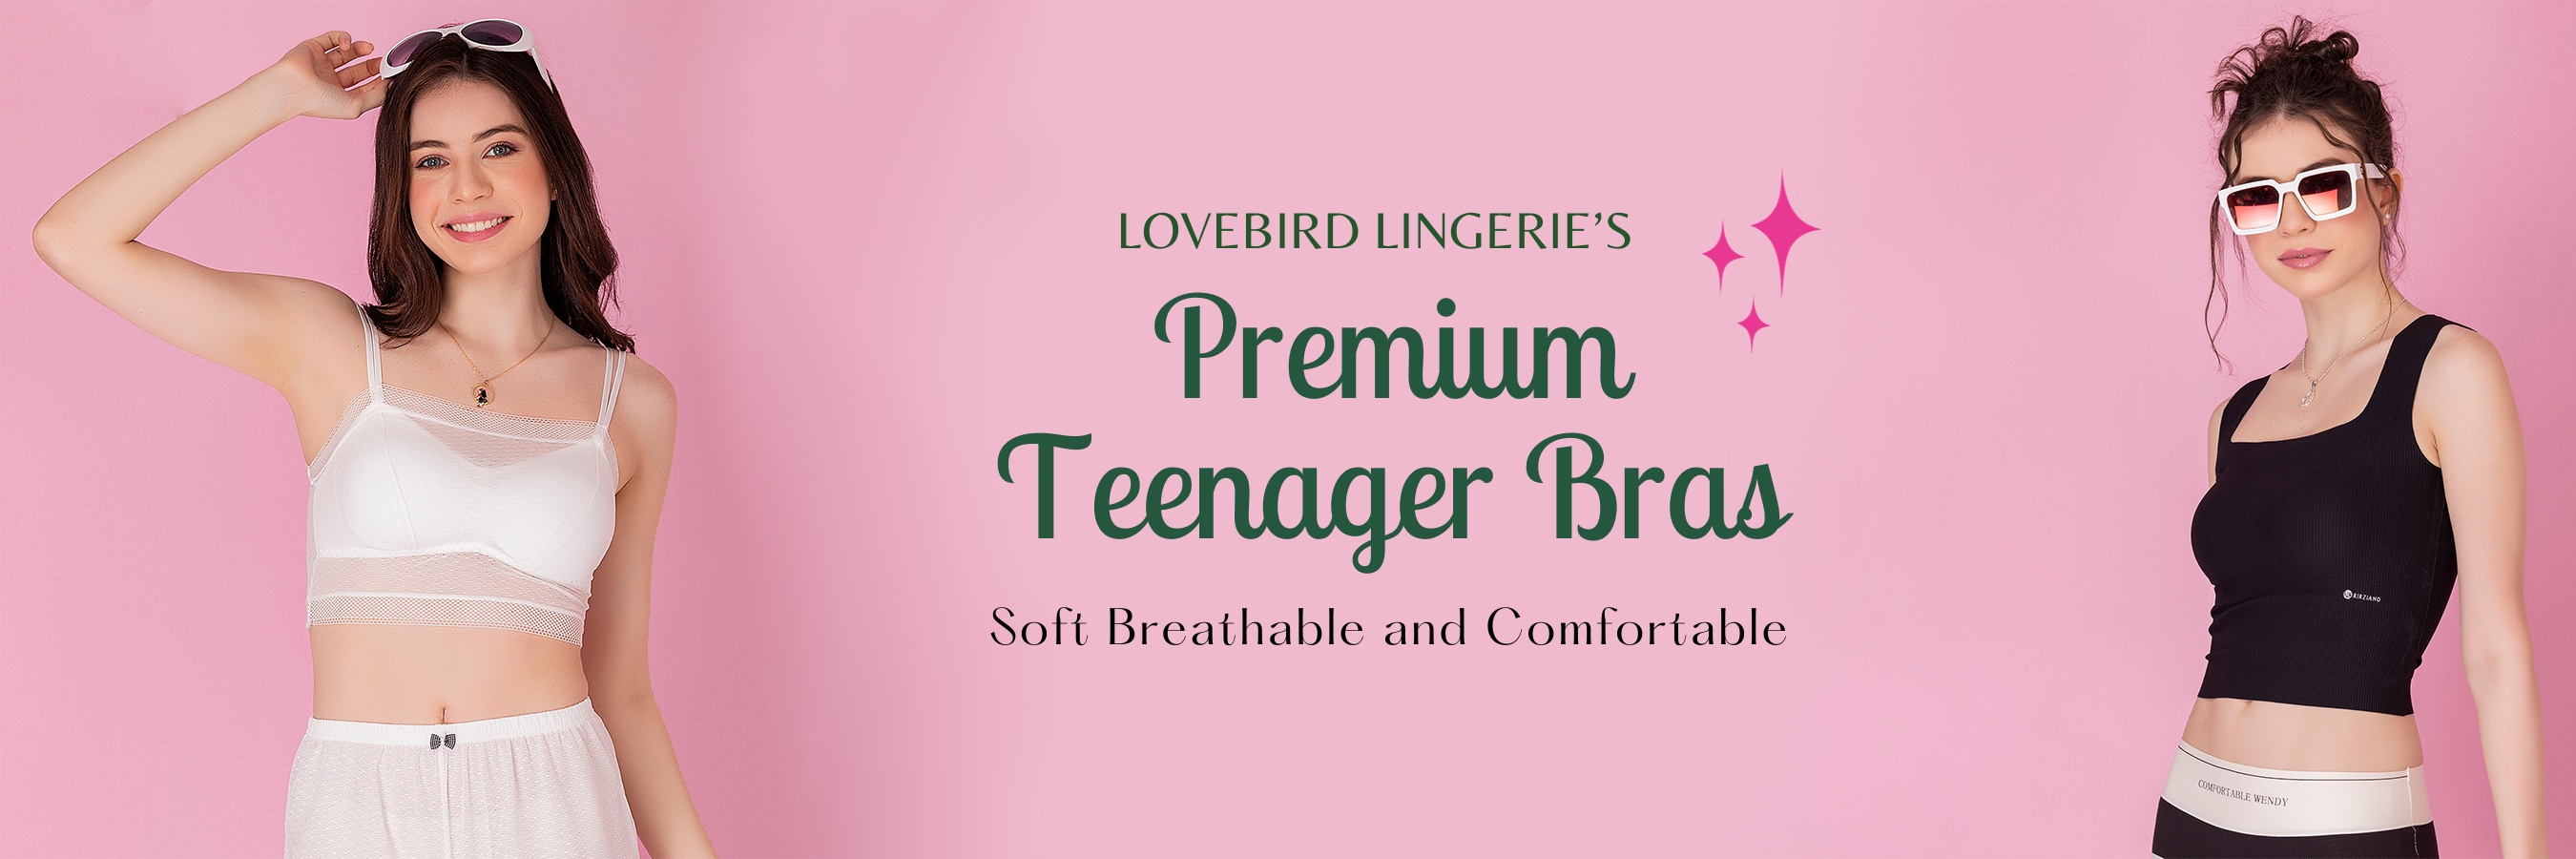 Teenager Bra - Shop for beginn banner lovebird